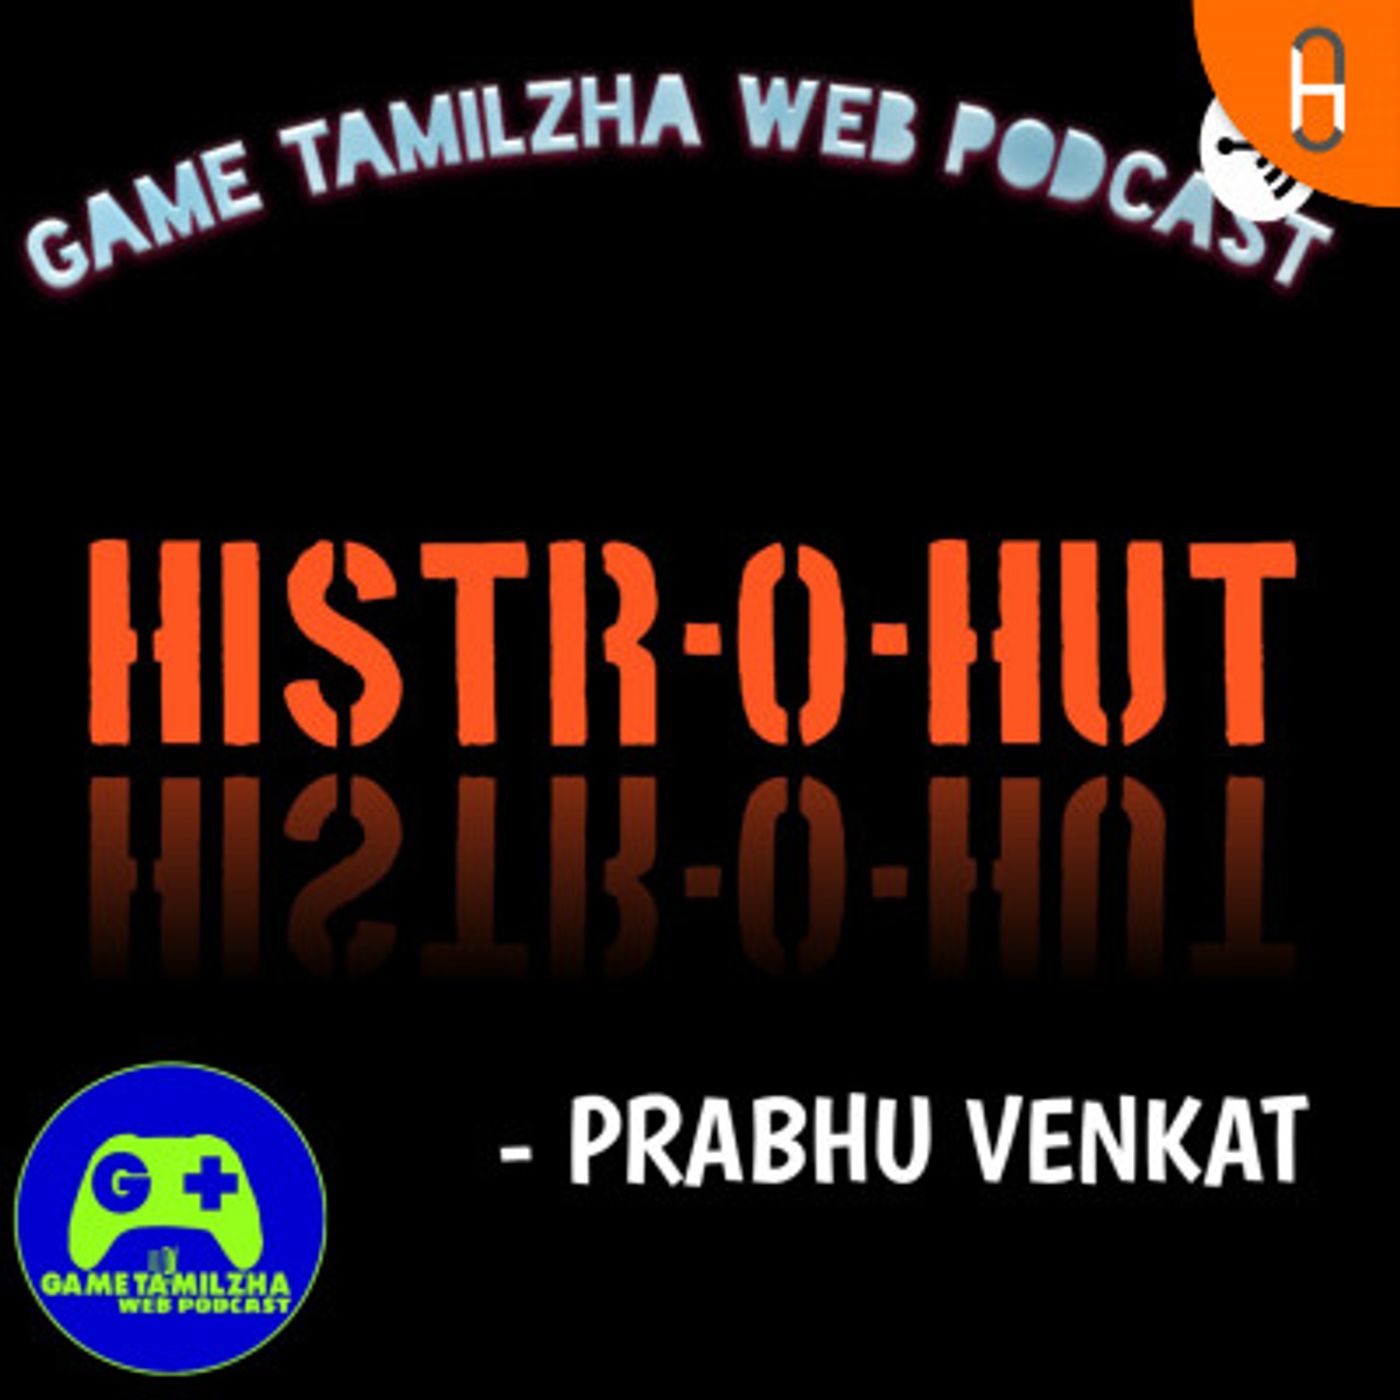 Tamil Podcast- HISTR-O-HUT